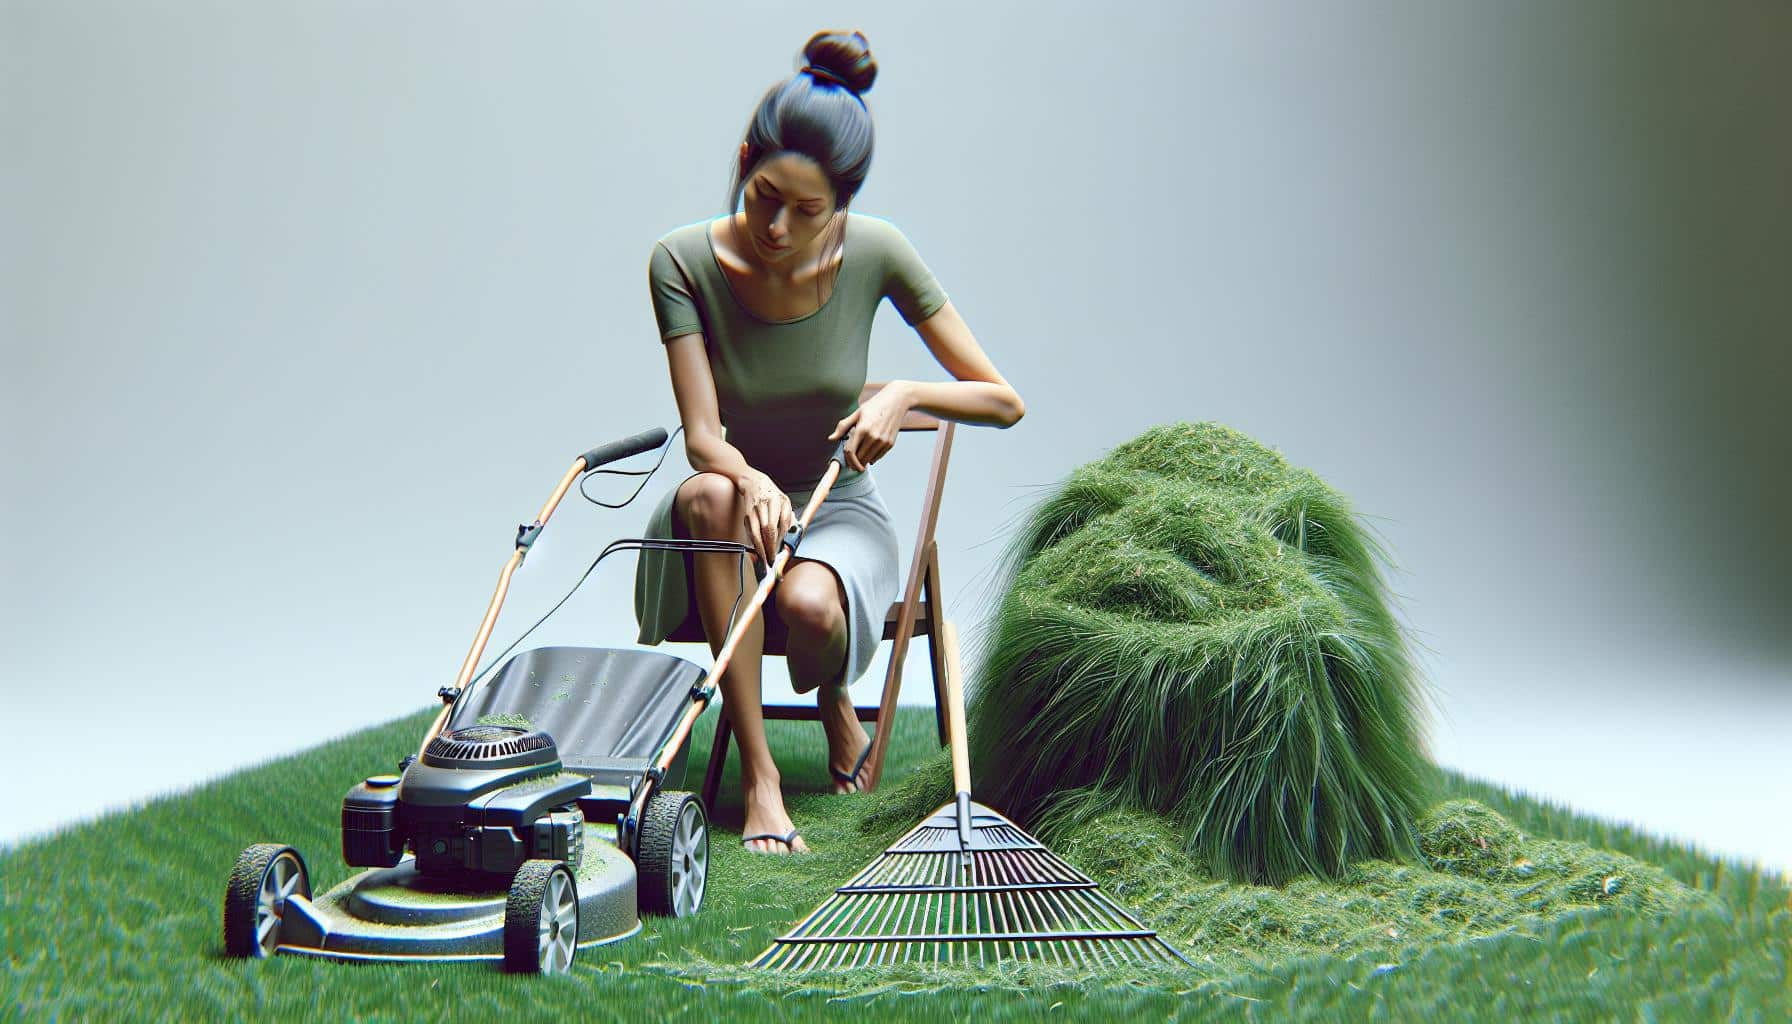 woman mowing lawn miniature scene